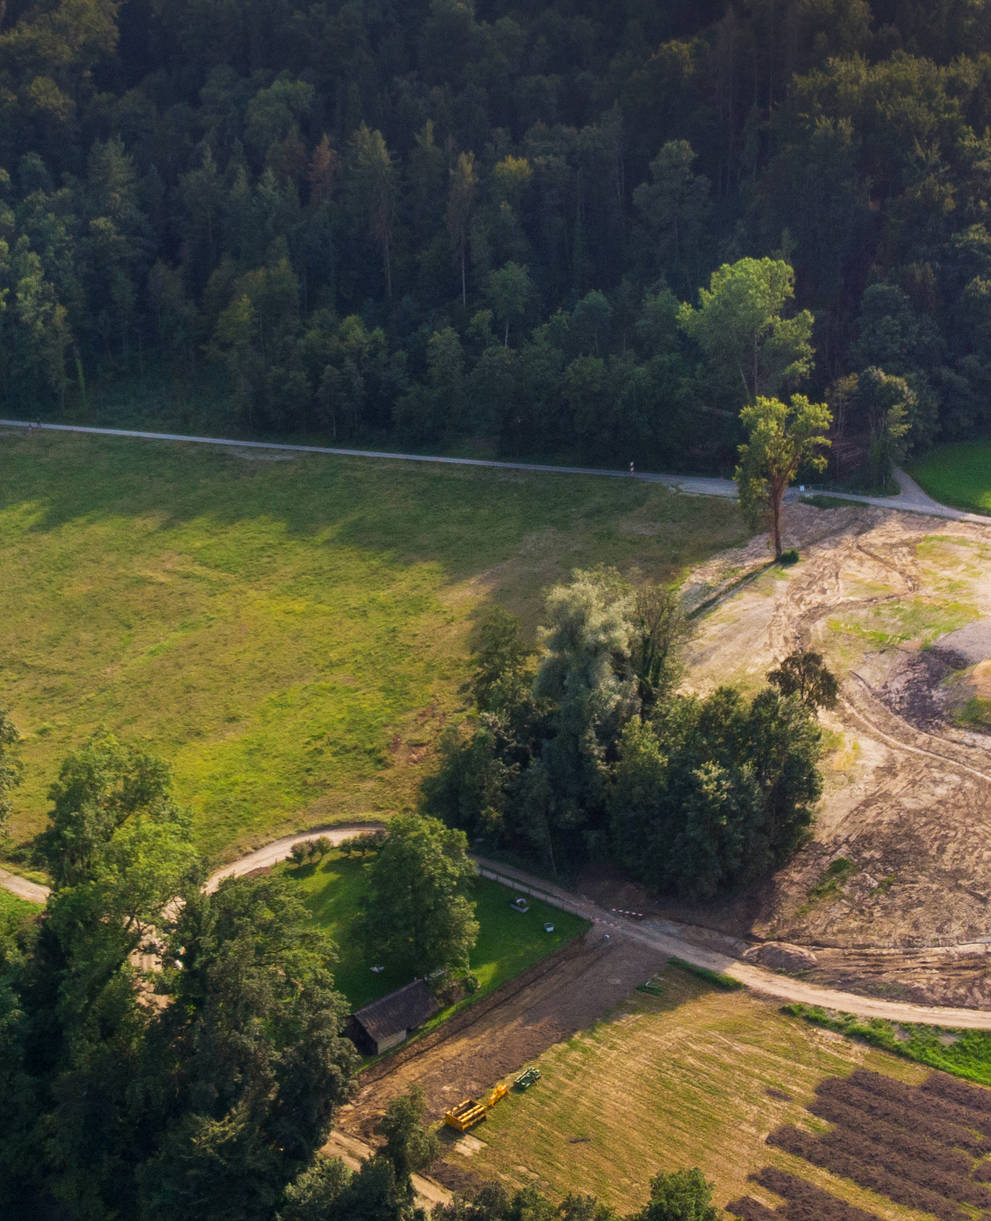 Das neue Naturschutzgebiet in Tössriederen aus der Vogelperspektive